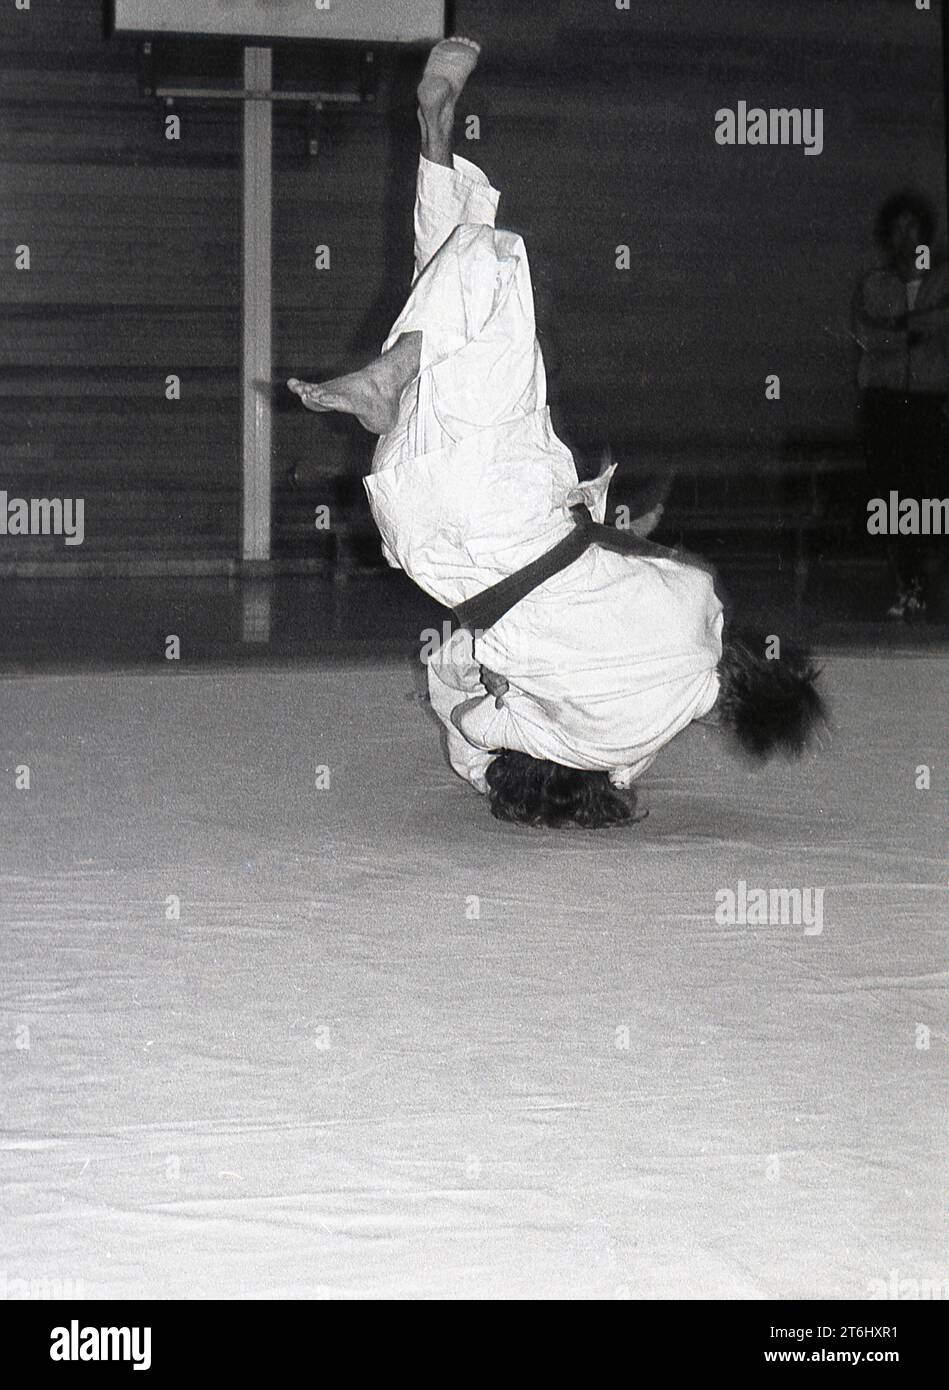 Anni '1970, judo, due concorrenti maschili bloccati insieme in combattimento su un tappetino, entrambi capovolti, piedi su, Inghilterra, Regno Unito. L'arte marziale giapponese del Judo è uno sport fisico duro, che coinvolge numerose mosse, ma che richiede anche una forte disciplina mentale, concentrazione e resilienza. Un fattore chiave nel judo è il rispetto, per il tuo avversario e per te stesso. Foto Stock